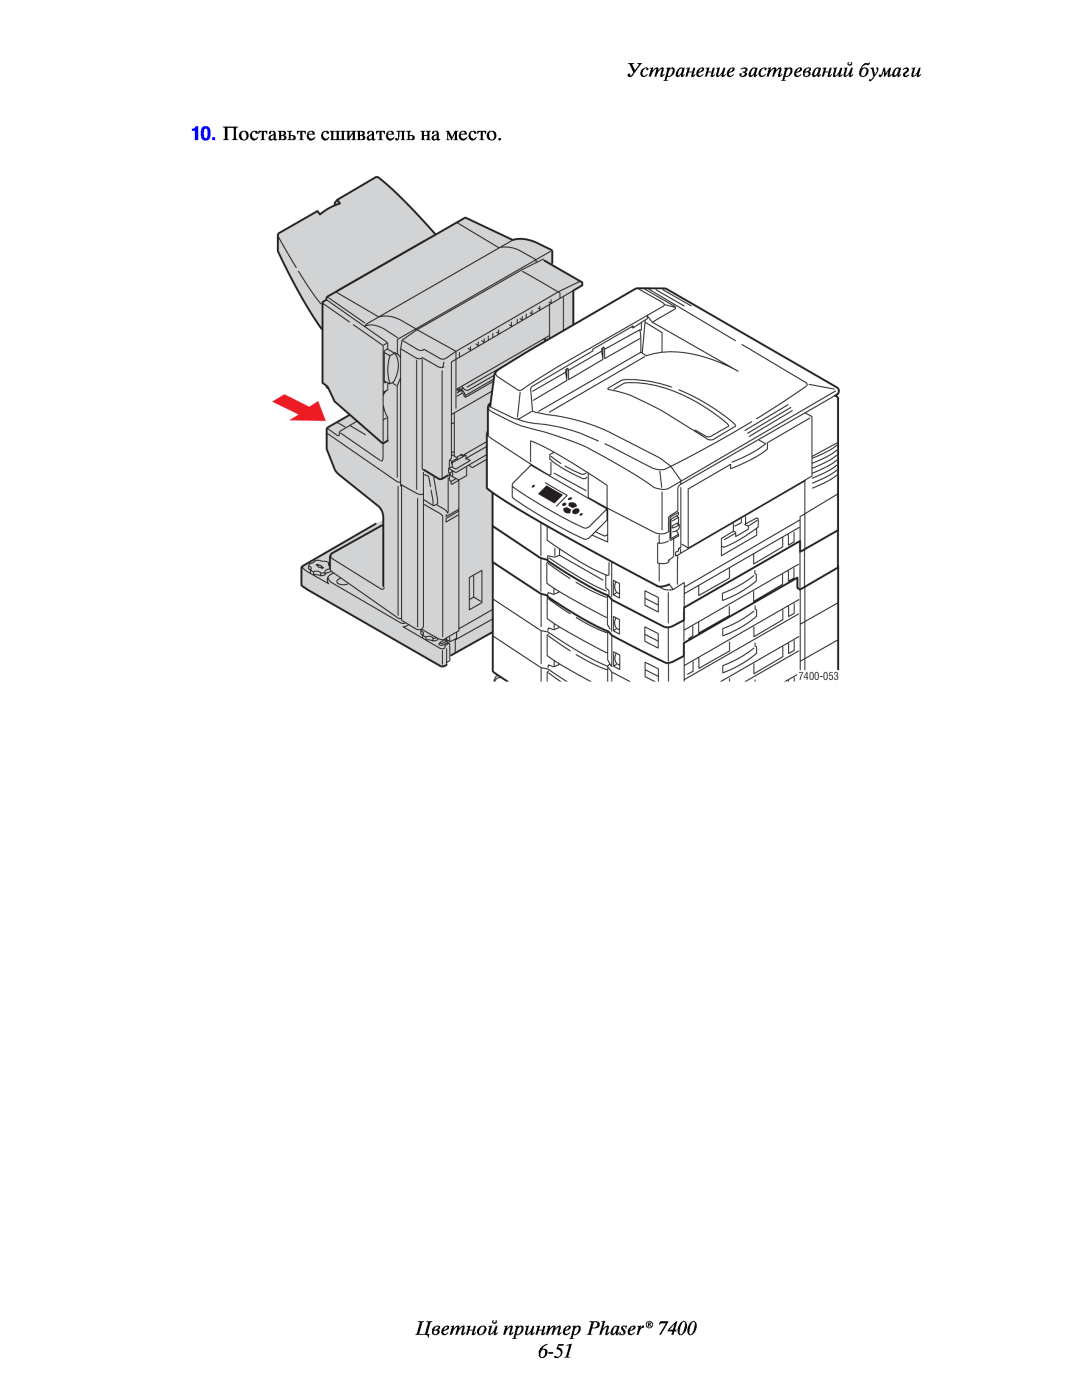 Xerox manual Цветной принтер Phaser 6-51, Устранение застреваний бумаги, 10.Поставьте сшиватель на место, 7400-053 